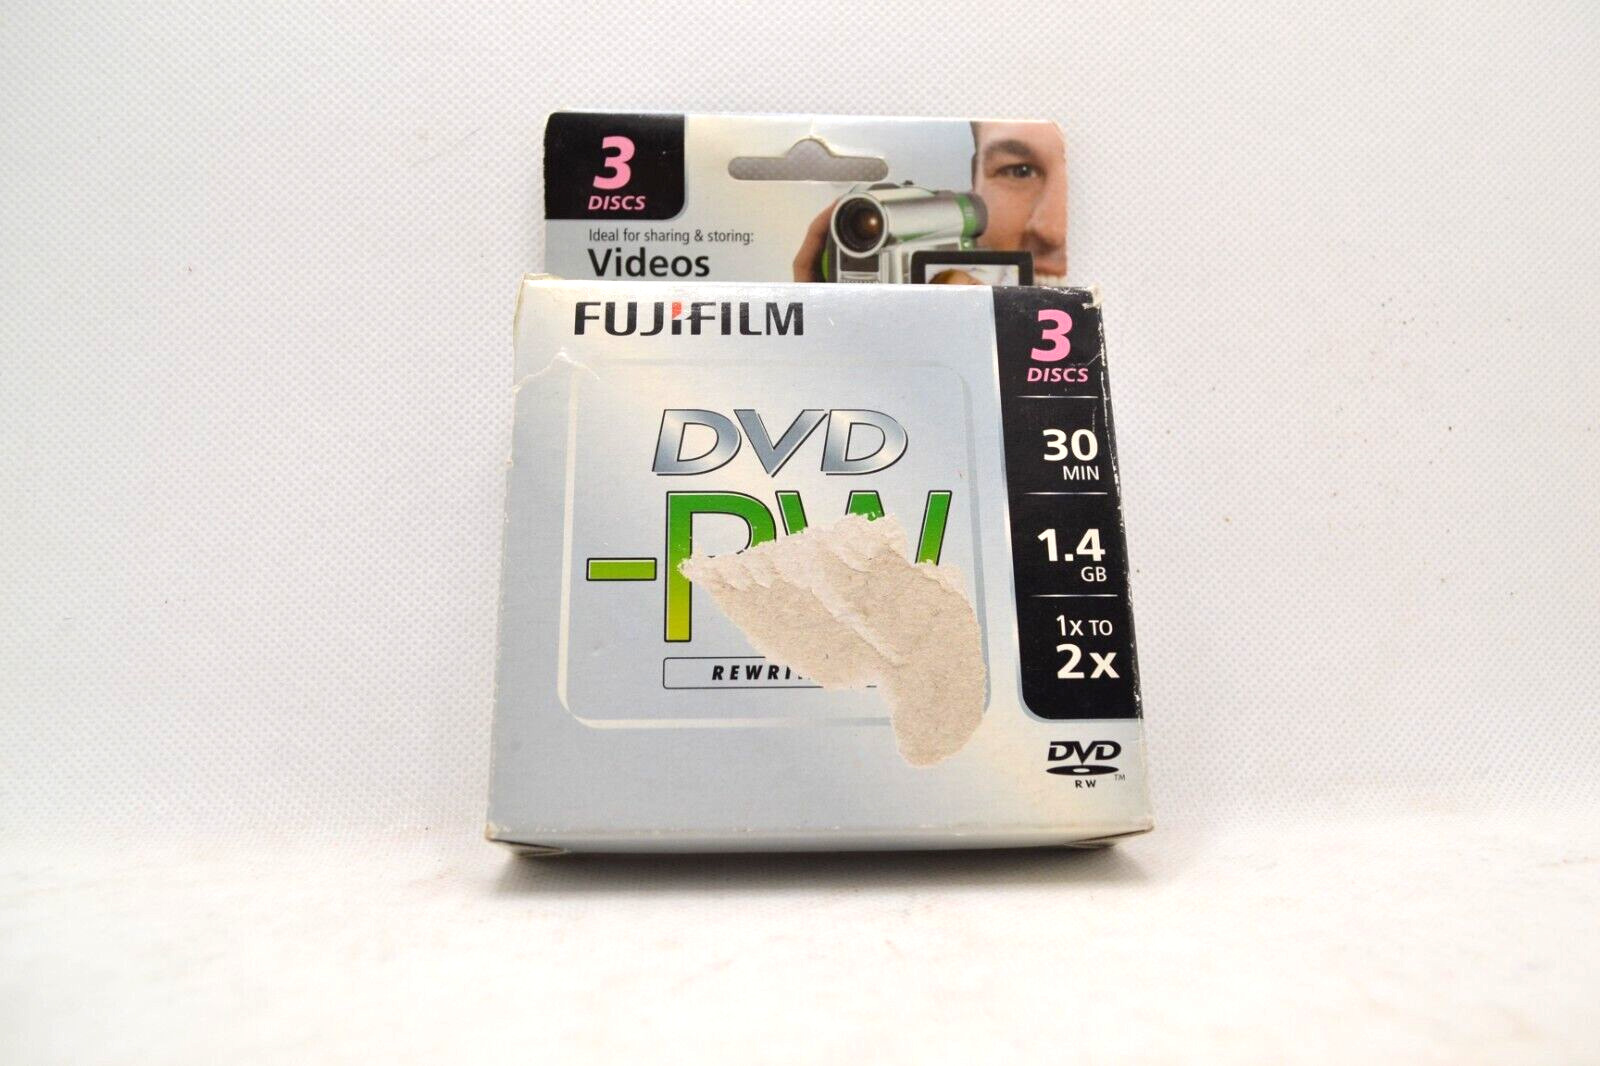 DVD-RW FUJIFILM VIDEOS PHOTOS DATA 3 DISCS 30MIN 1.4GB 1x TO 2x